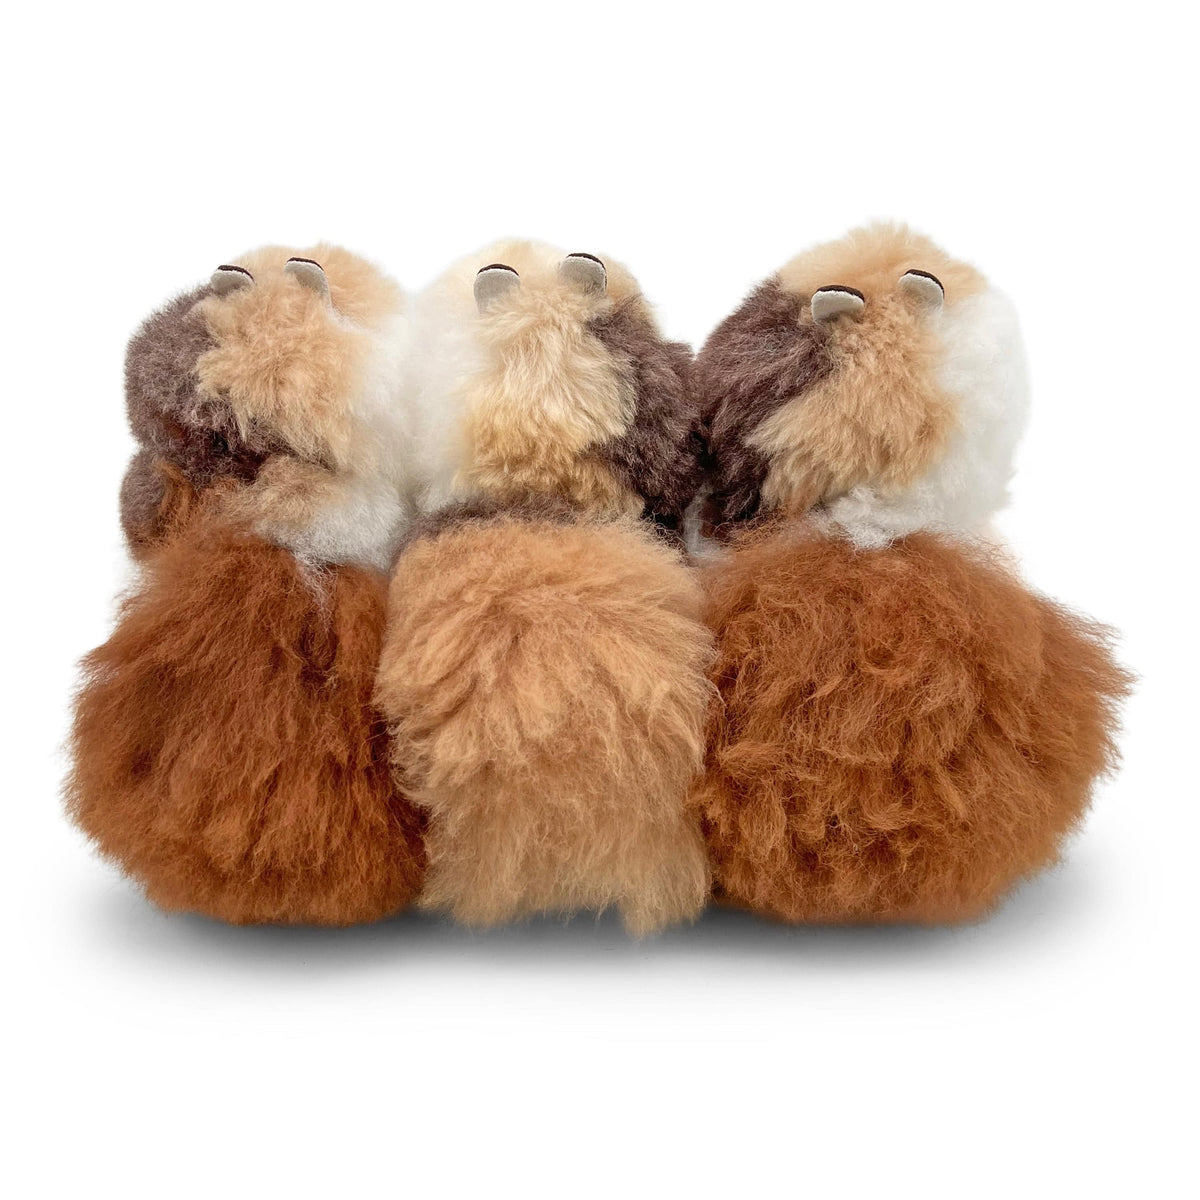 Käsekuchen – kleines Alpaka-Spielzeug (23 cm) – limitierte Auflage